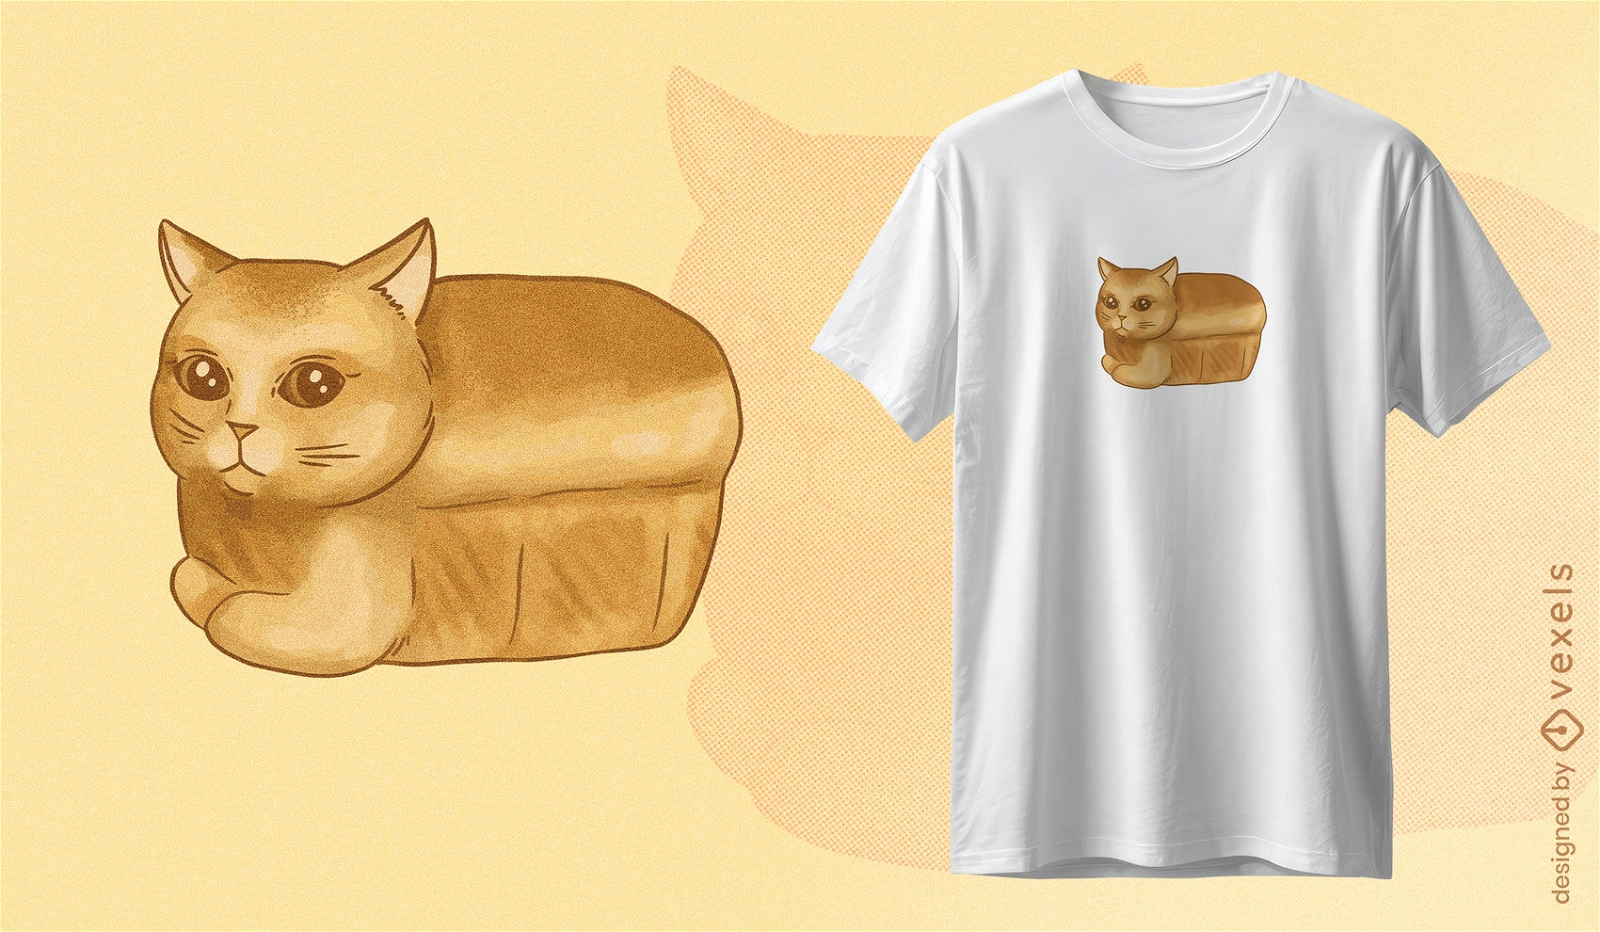 Loaf cat t-shirt design